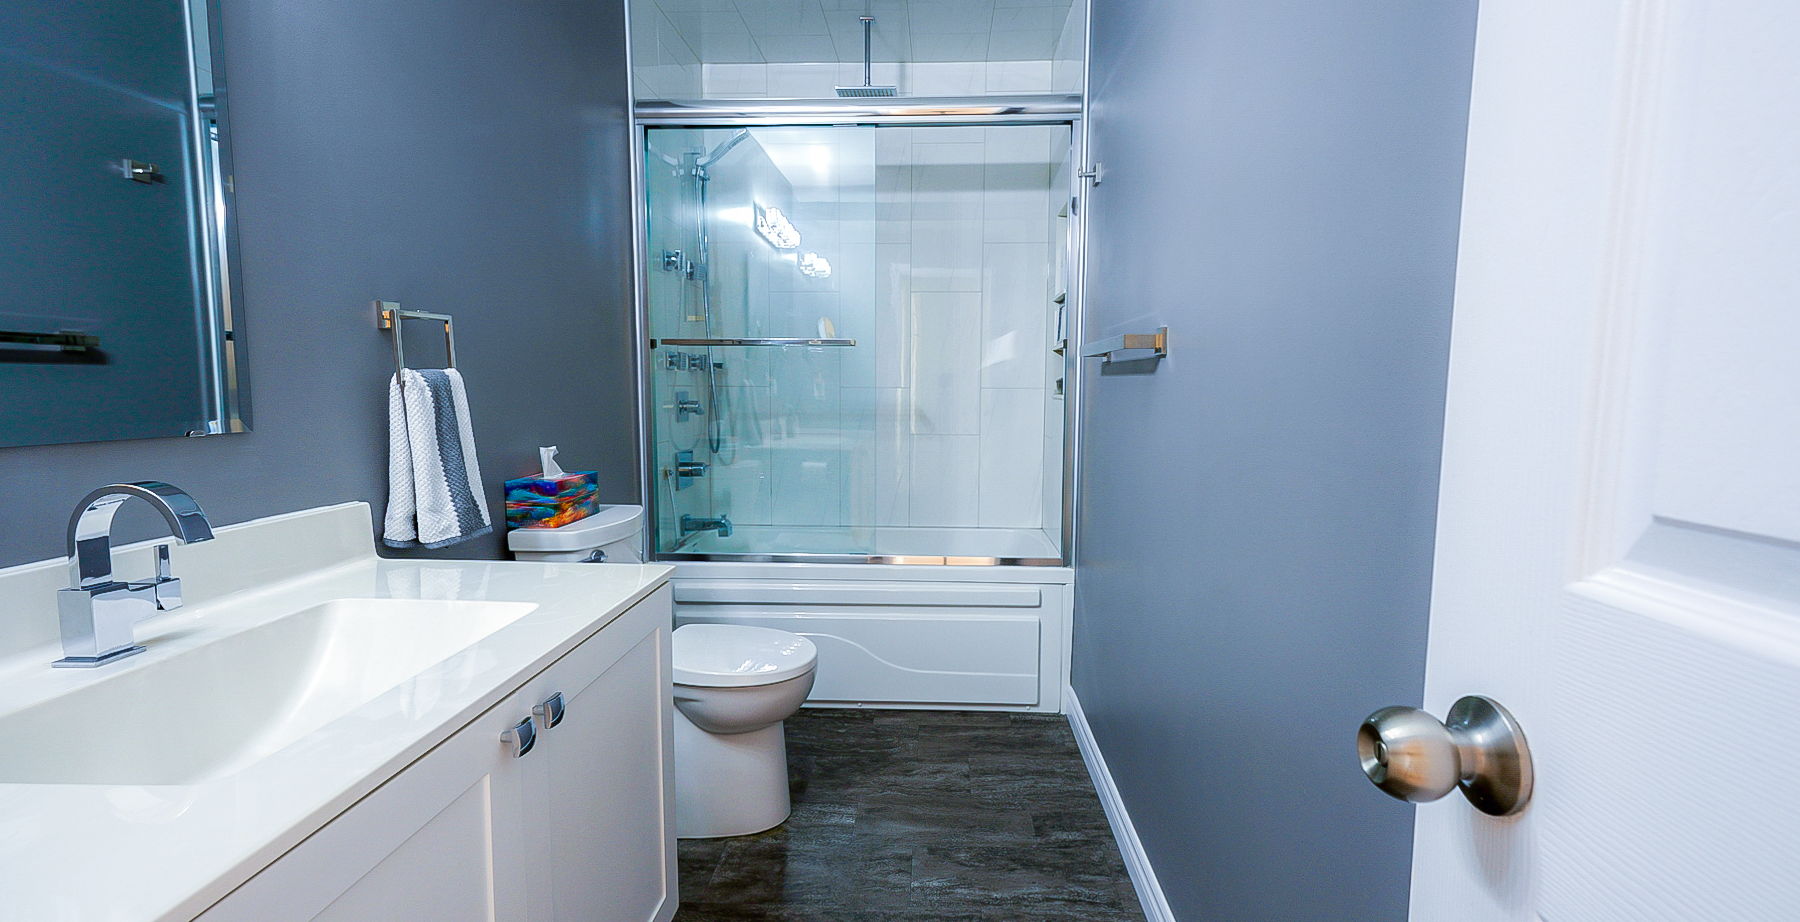 full bathroom with hardwood flooring, toilet, mirror, vanity, and combined bath / shower with glass door